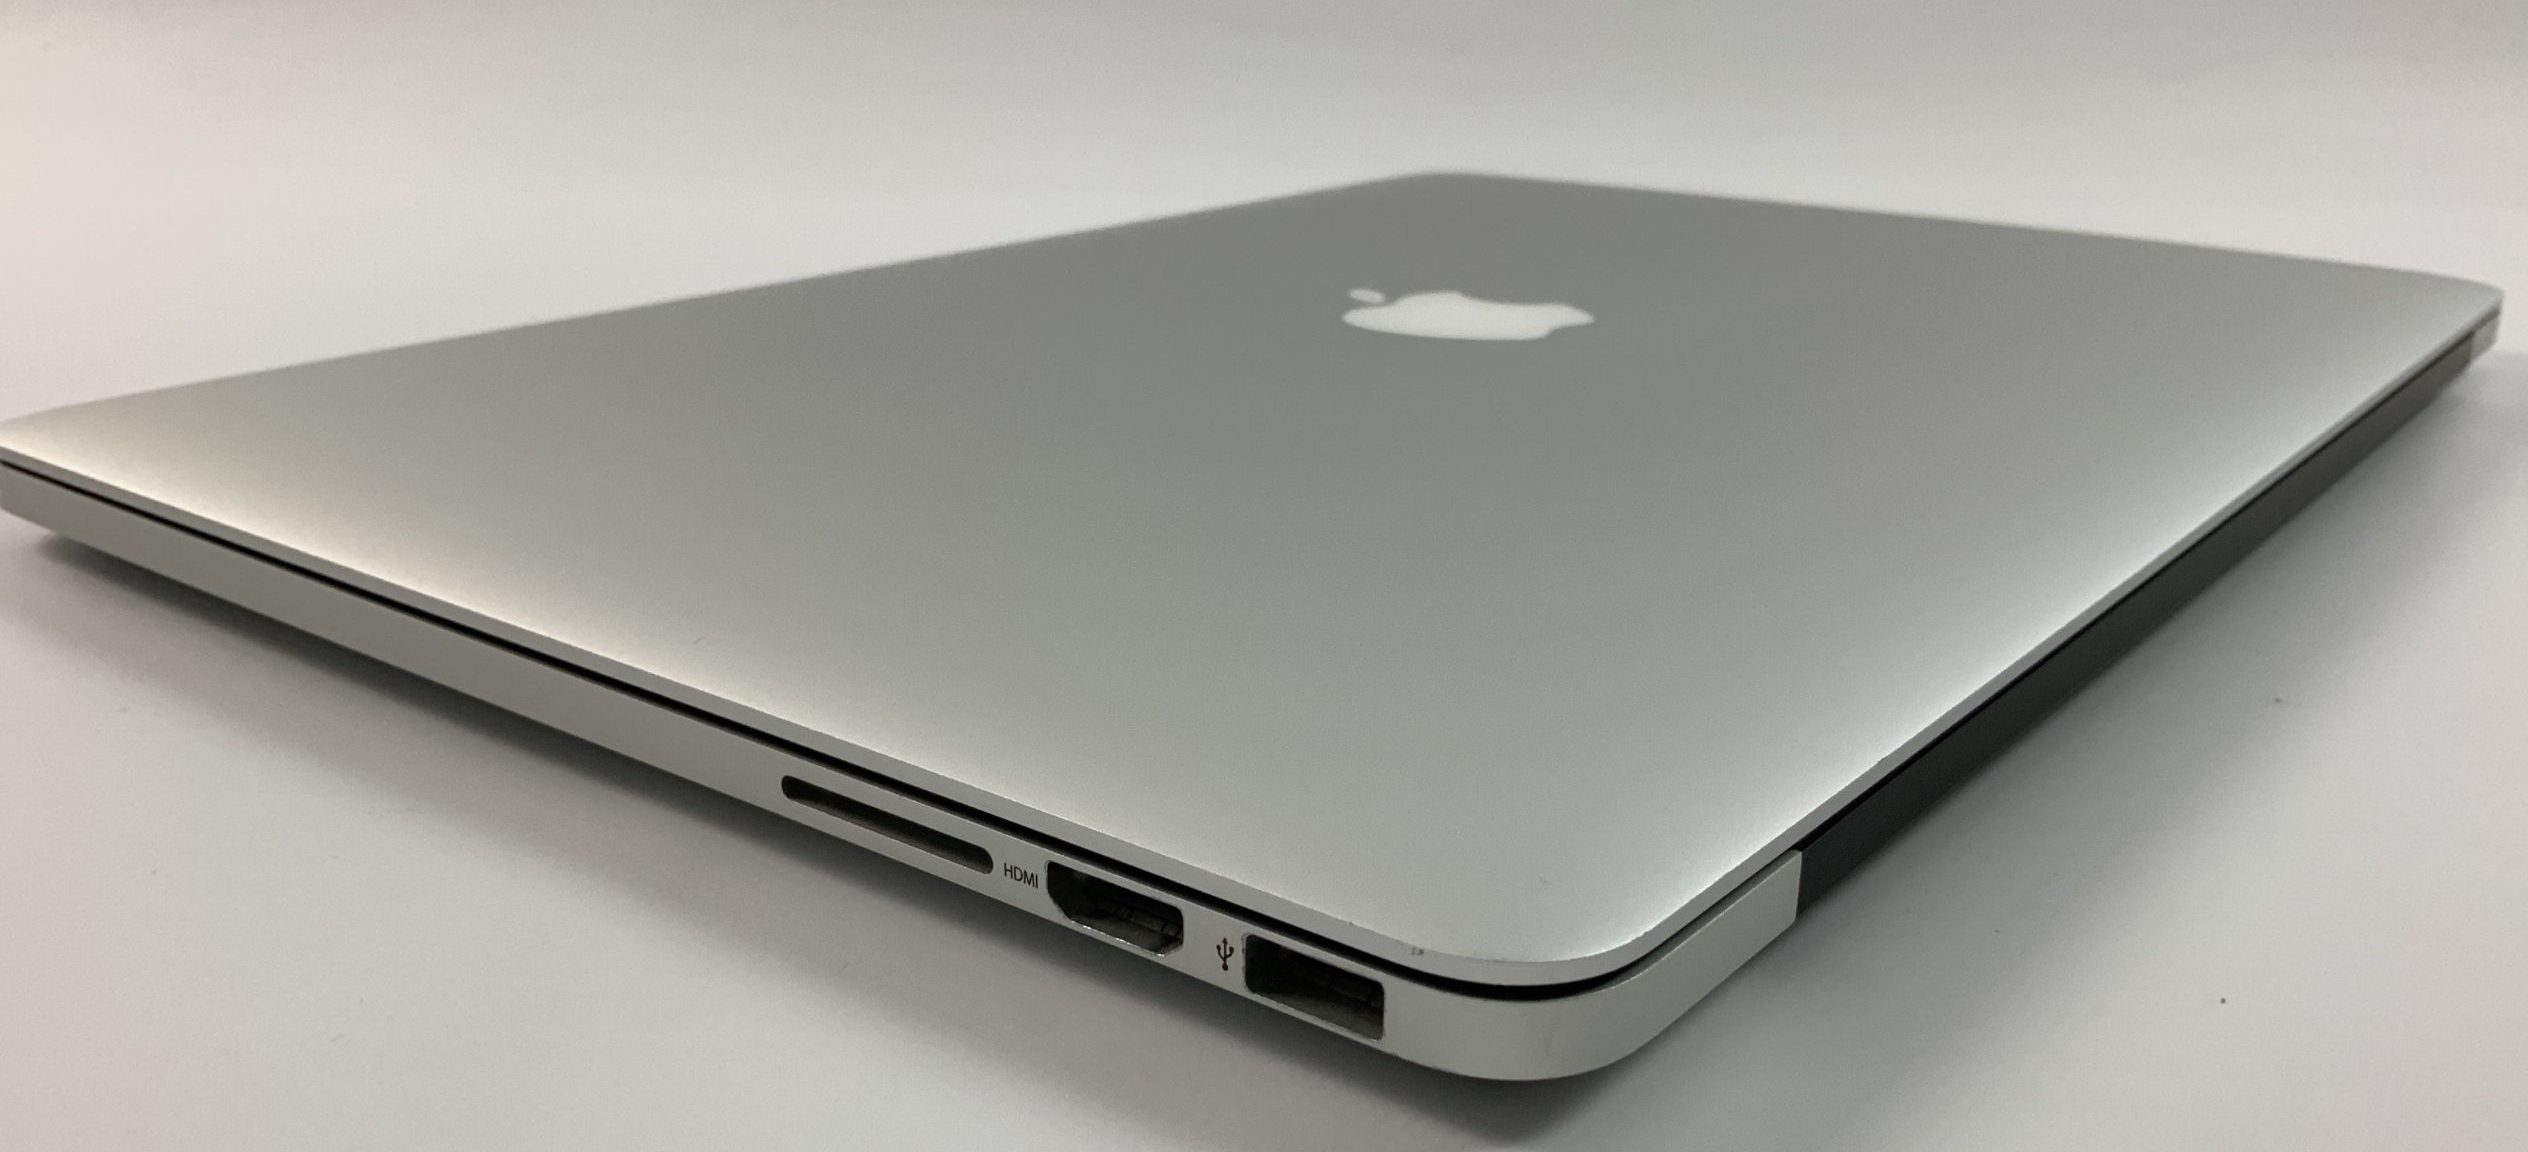 MacBook Pro Retina 15" Mid 2014 (Intel Quad-Core i7 2.5 GHz 16 GB RAM 512 GB SSD), Intel Quad-Core i7 2.5 GHz, 16 GB RAM, 512 GB SSD, bild 3